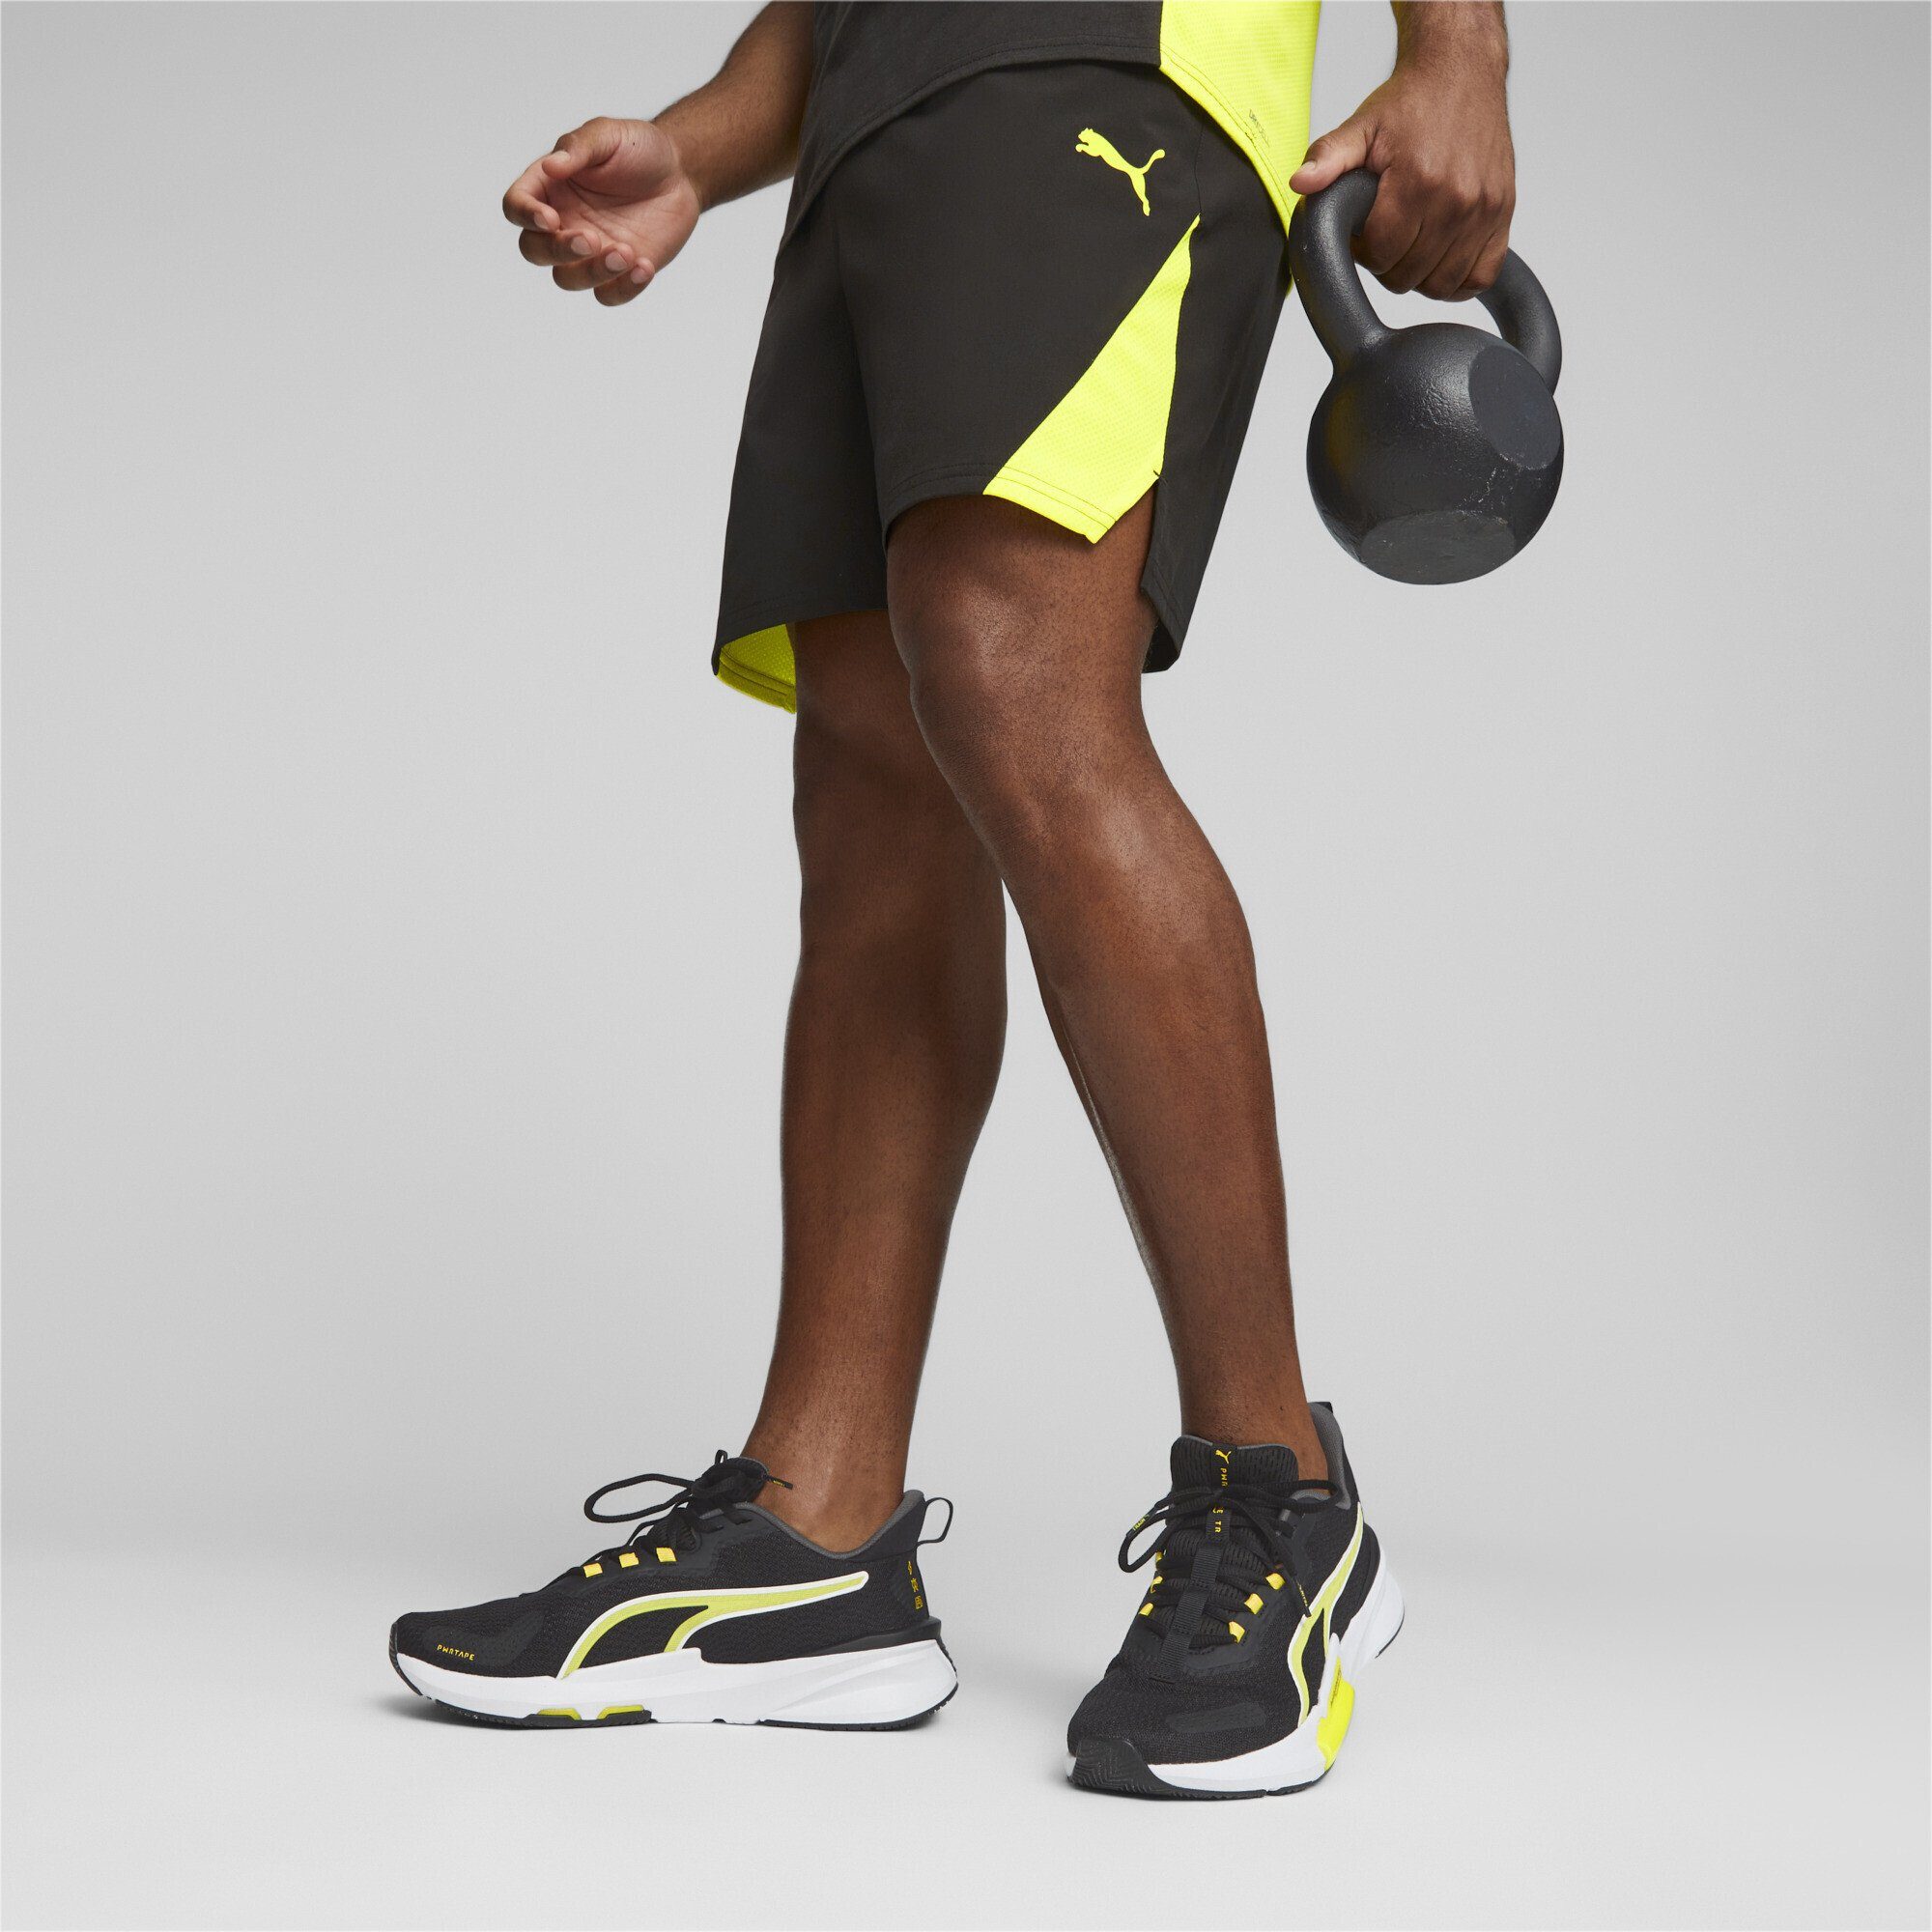 7'' Ultrabreathe Trainingsshorts Yellow Woven PUMA Trainingsshorts Black Herren Burst